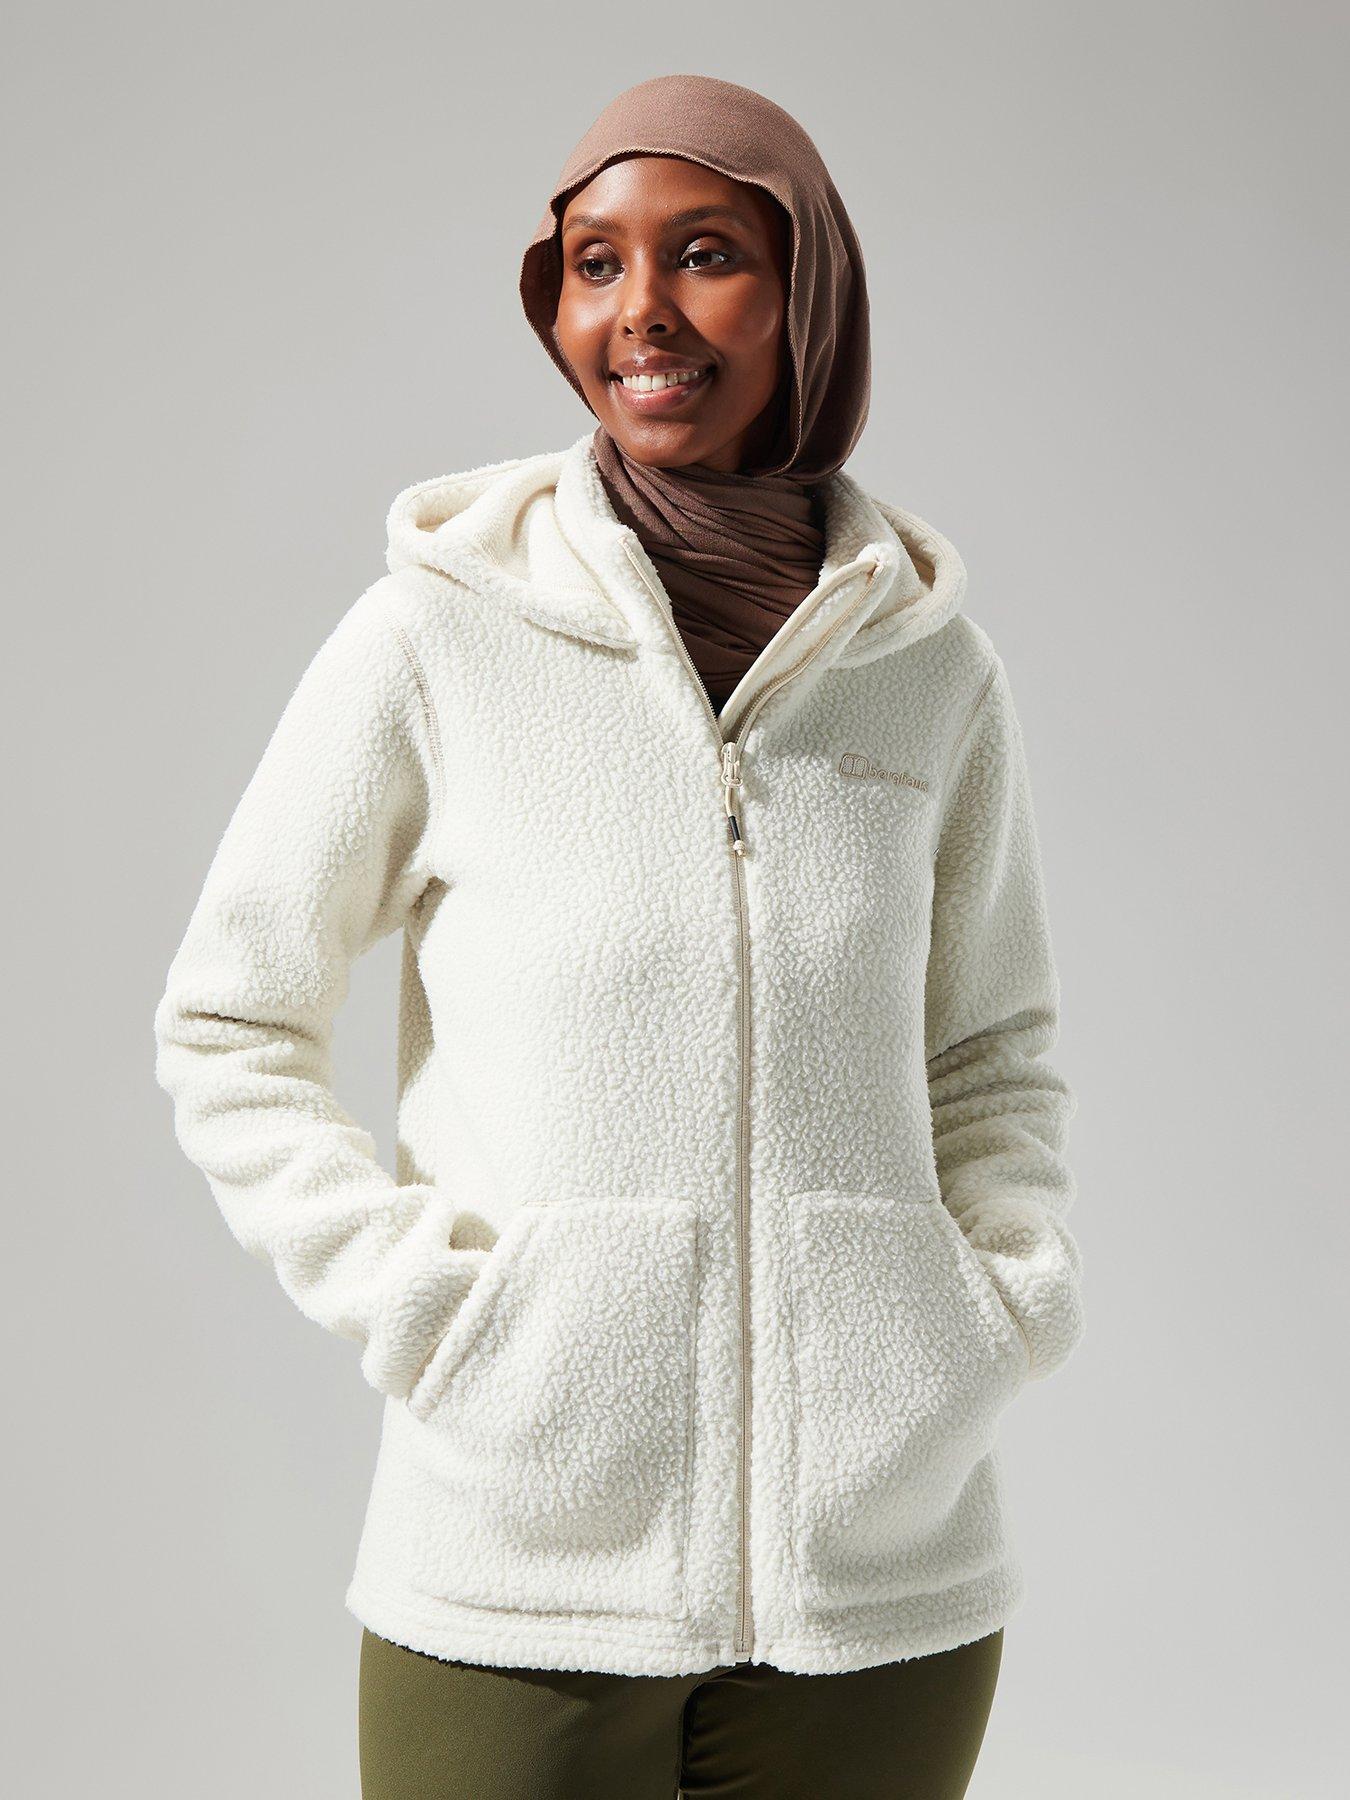 Essentials Women's Full-Zip Polar Fleece Vest, Ivory, Small